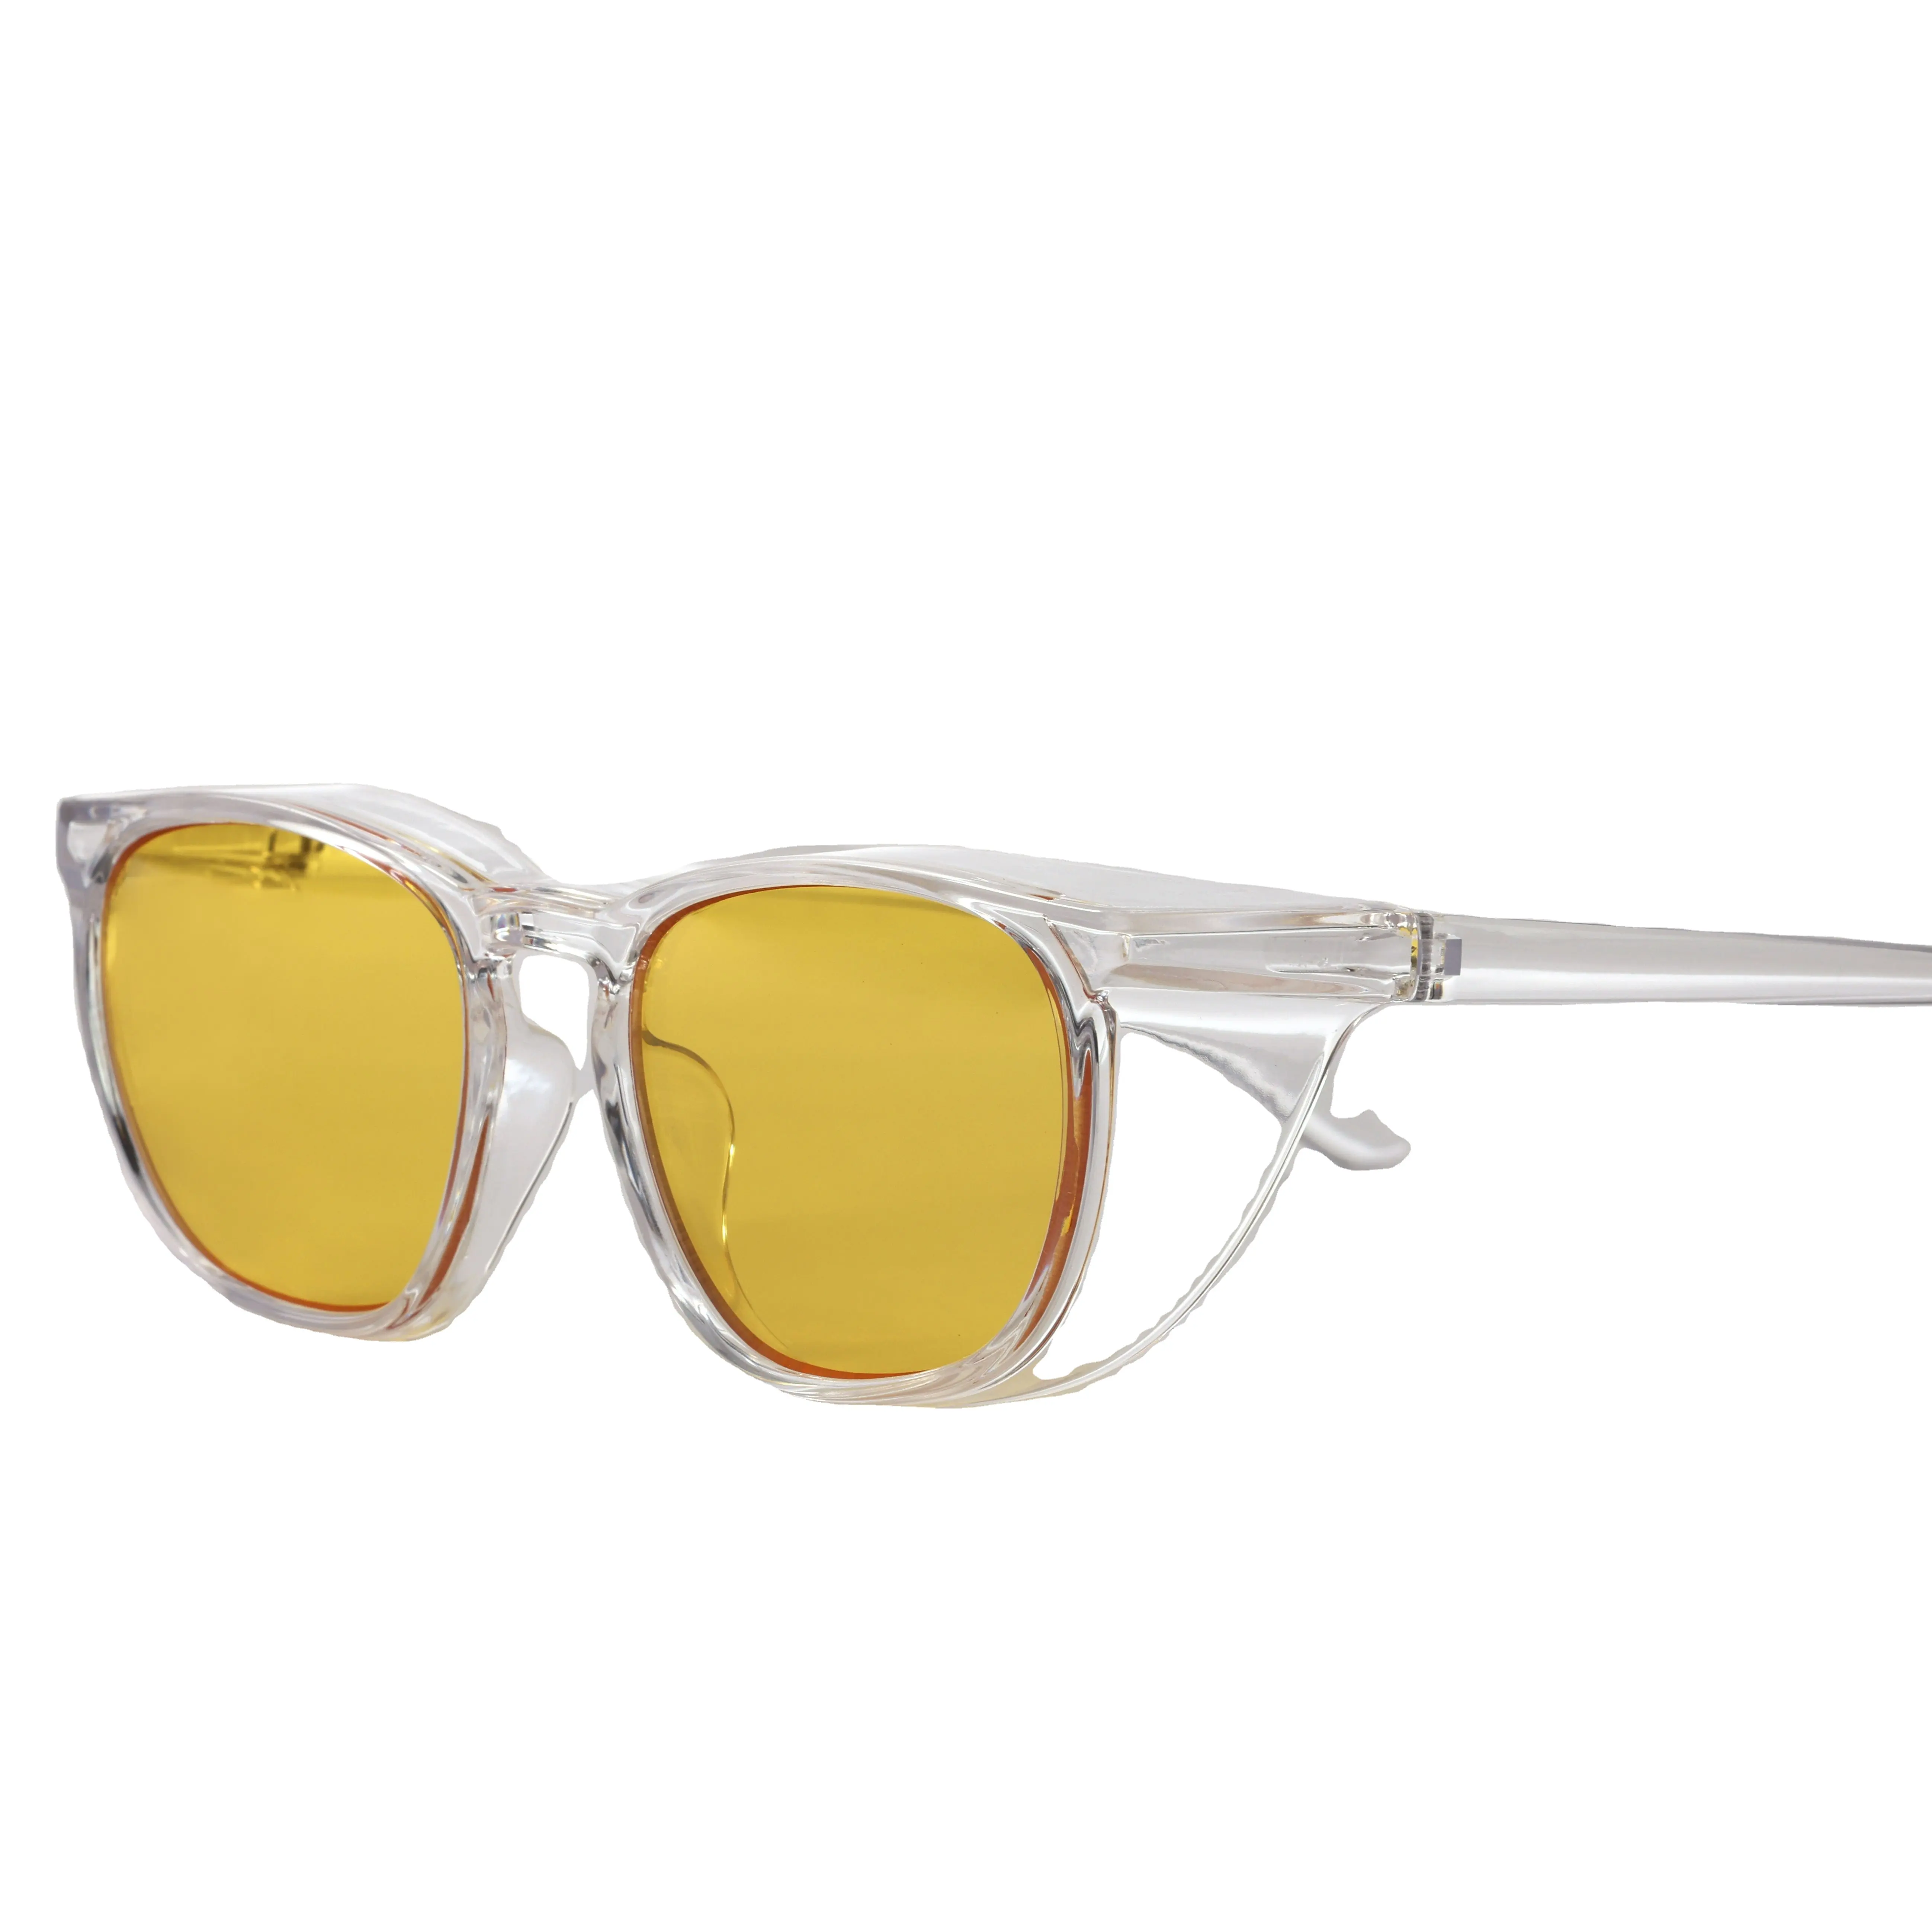 Männer Frauen Persönliche Uv400 Anti-Fog-Sonnenbrille Gelbe Schutzbrille für Augenschutz-Antifog-Brille